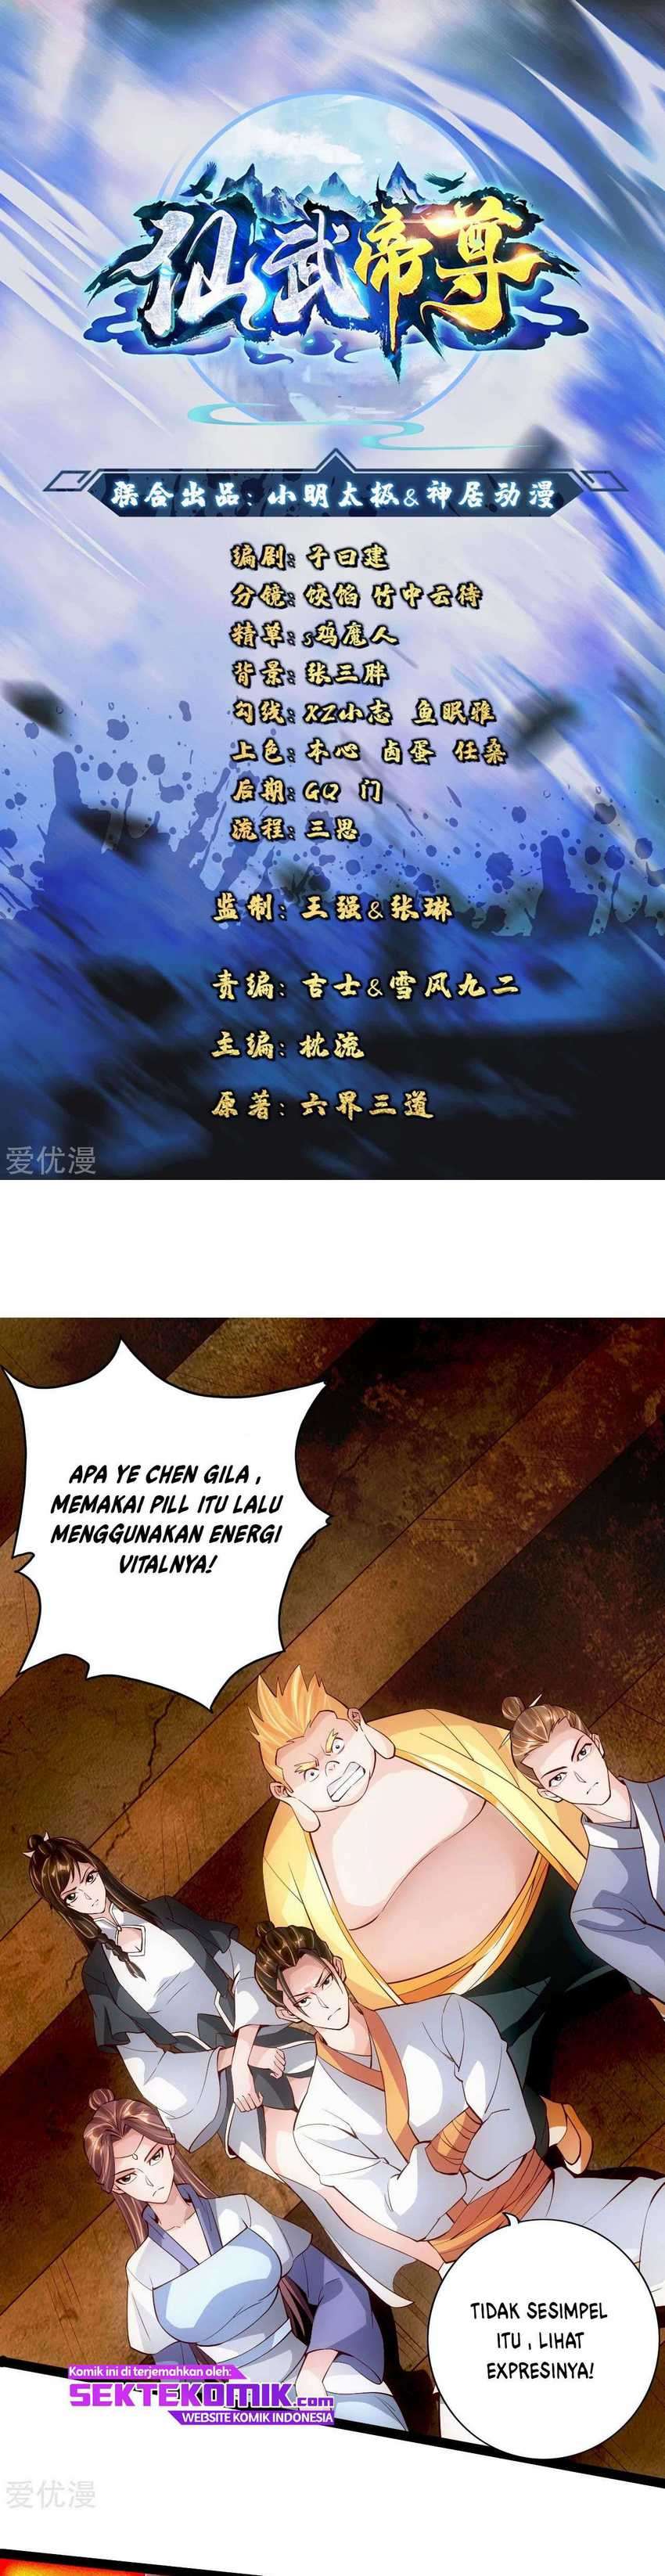 Xianwu Dizun Chapter 104